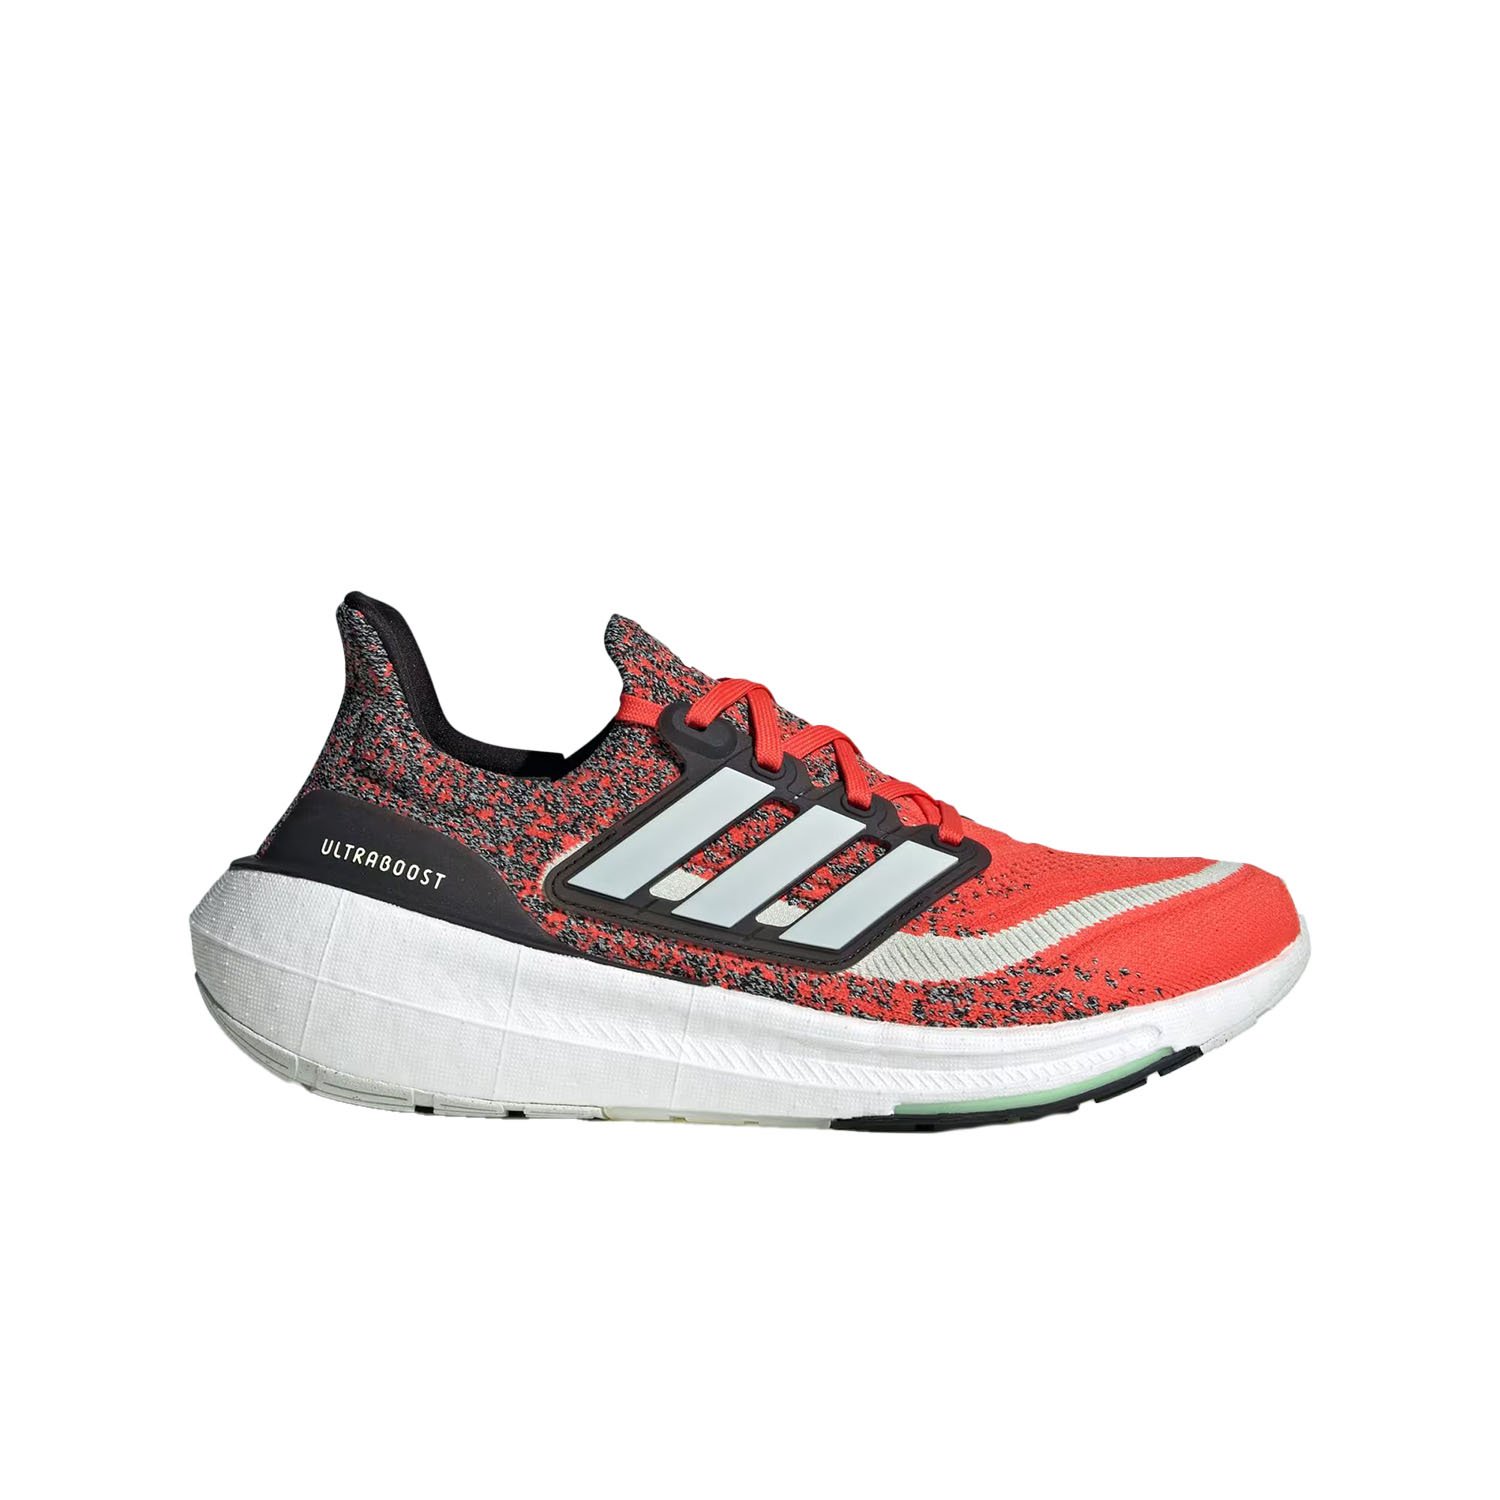 Adidas Ultraboost Light Erkek Yol Koşu Ayakkabısı - Kırmızı - 1